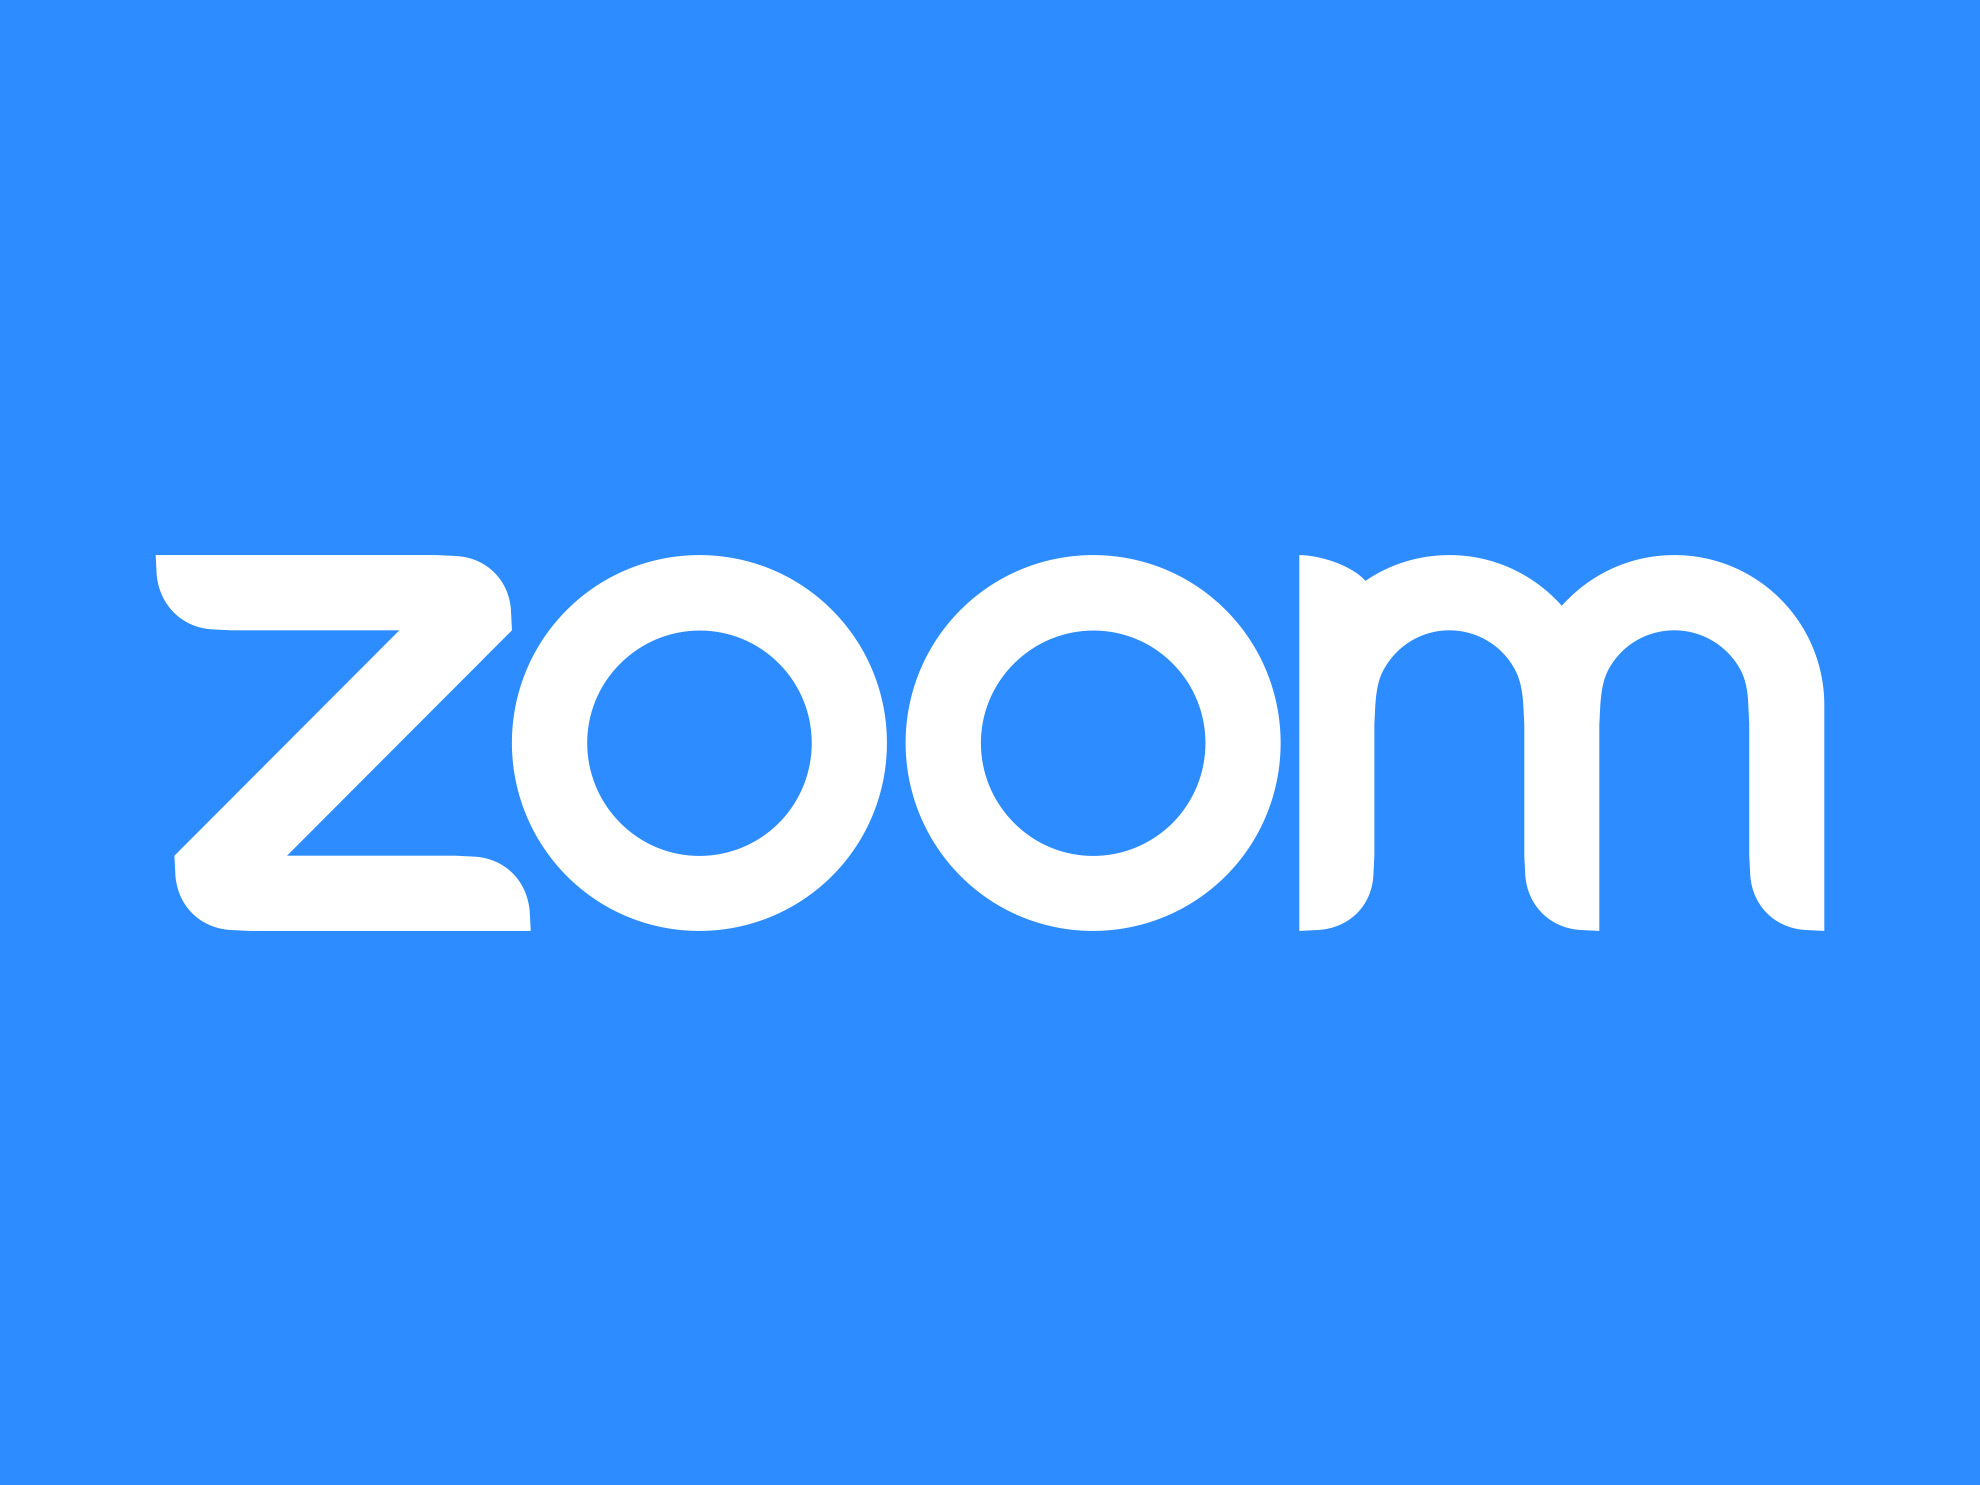 White zoom logo on blue background